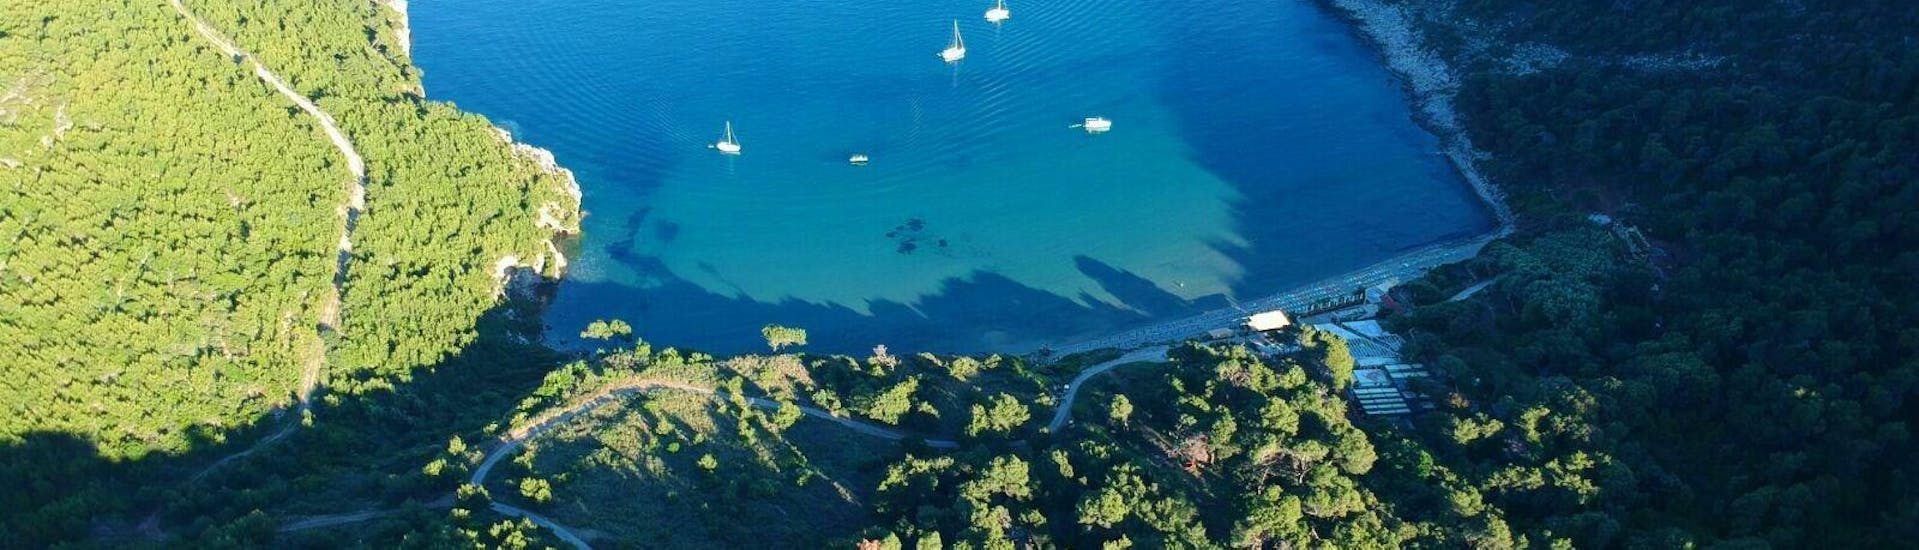 Una vista mozzafiato sui paesaggi incontaminati che i turisti possono ammirare durante il viaggio in barca privata (4 persone) alle isole Elafiti con snorkeling organizzato da Explore Dubrovnik by Boat.